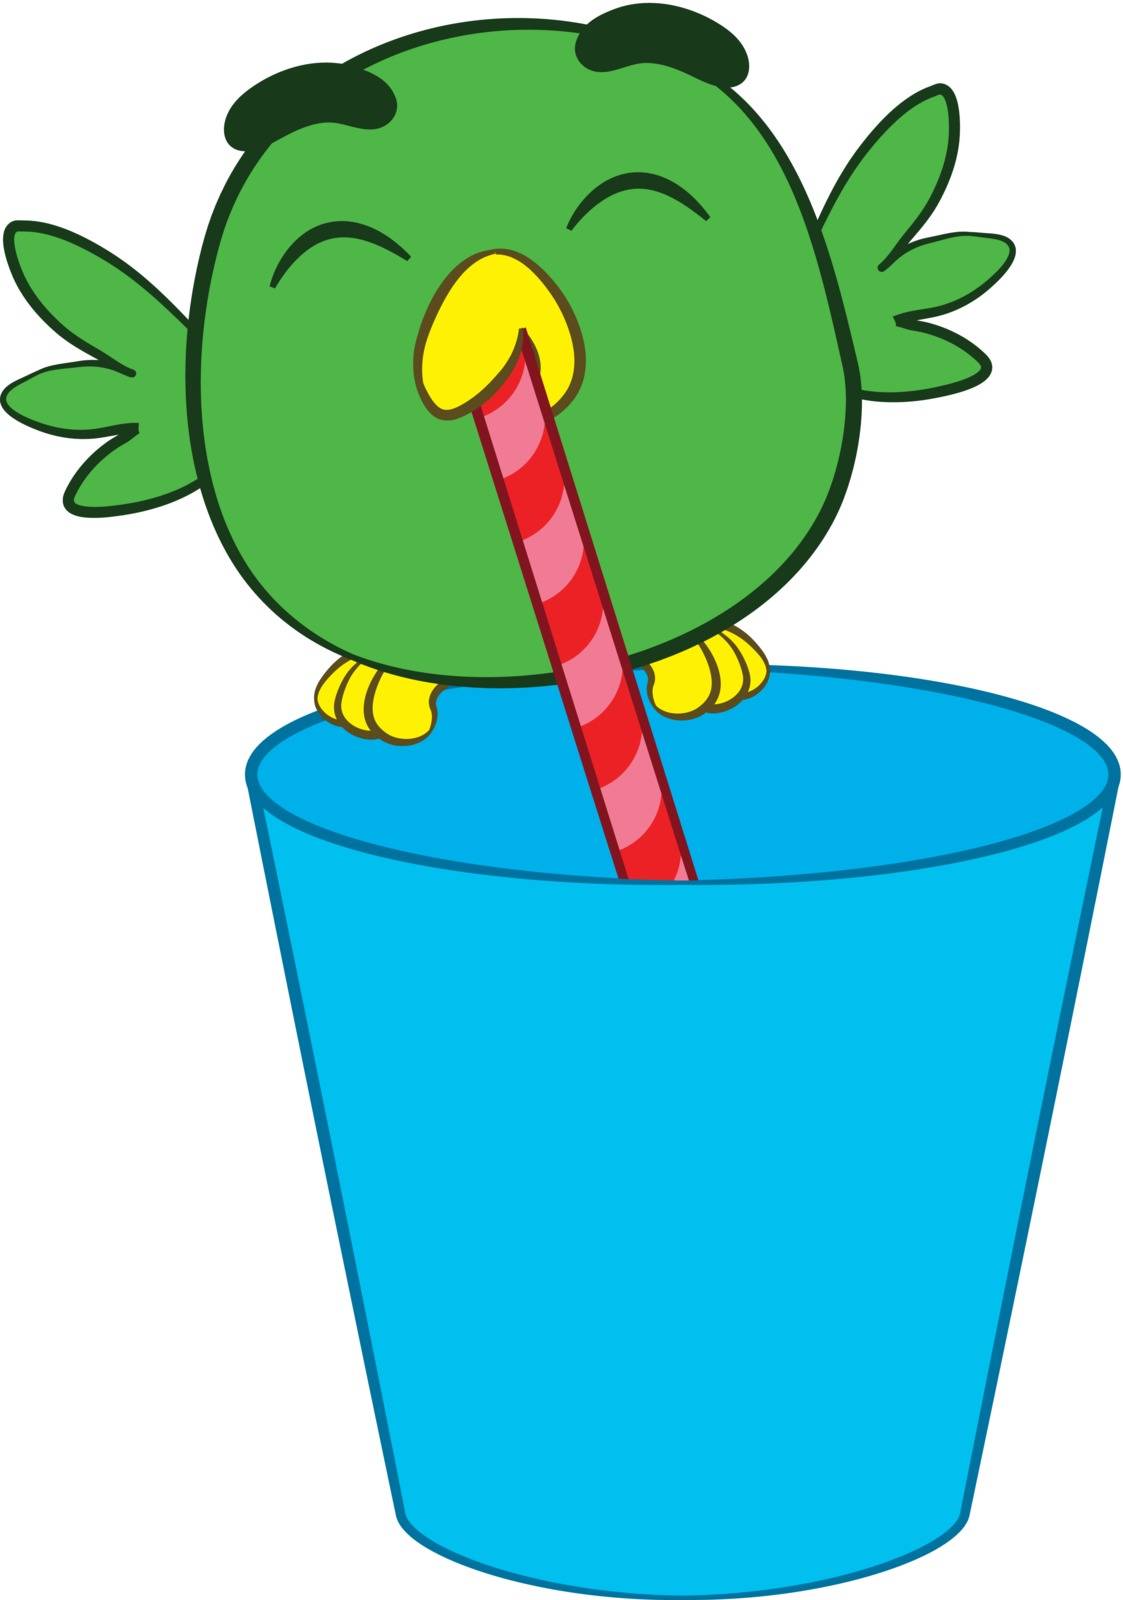 Adorable cartoon bird drinking through a straw by adrian_n